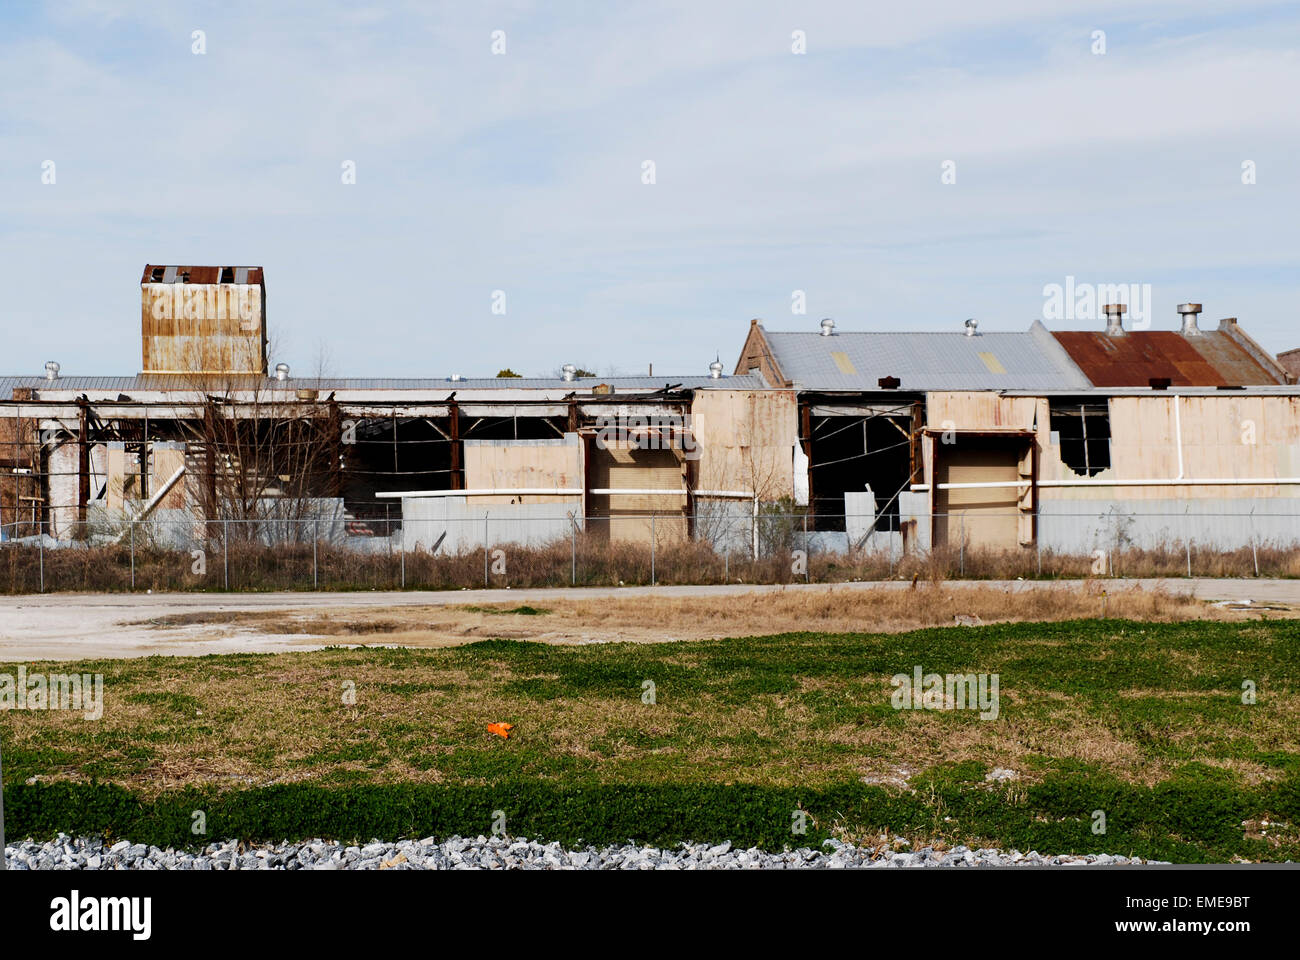 L'usine destoyed par la tempête dans le Ninth Ward de la Nouvelle Orléans 5 ans après l'ouragan Katrina. Banque D'Images